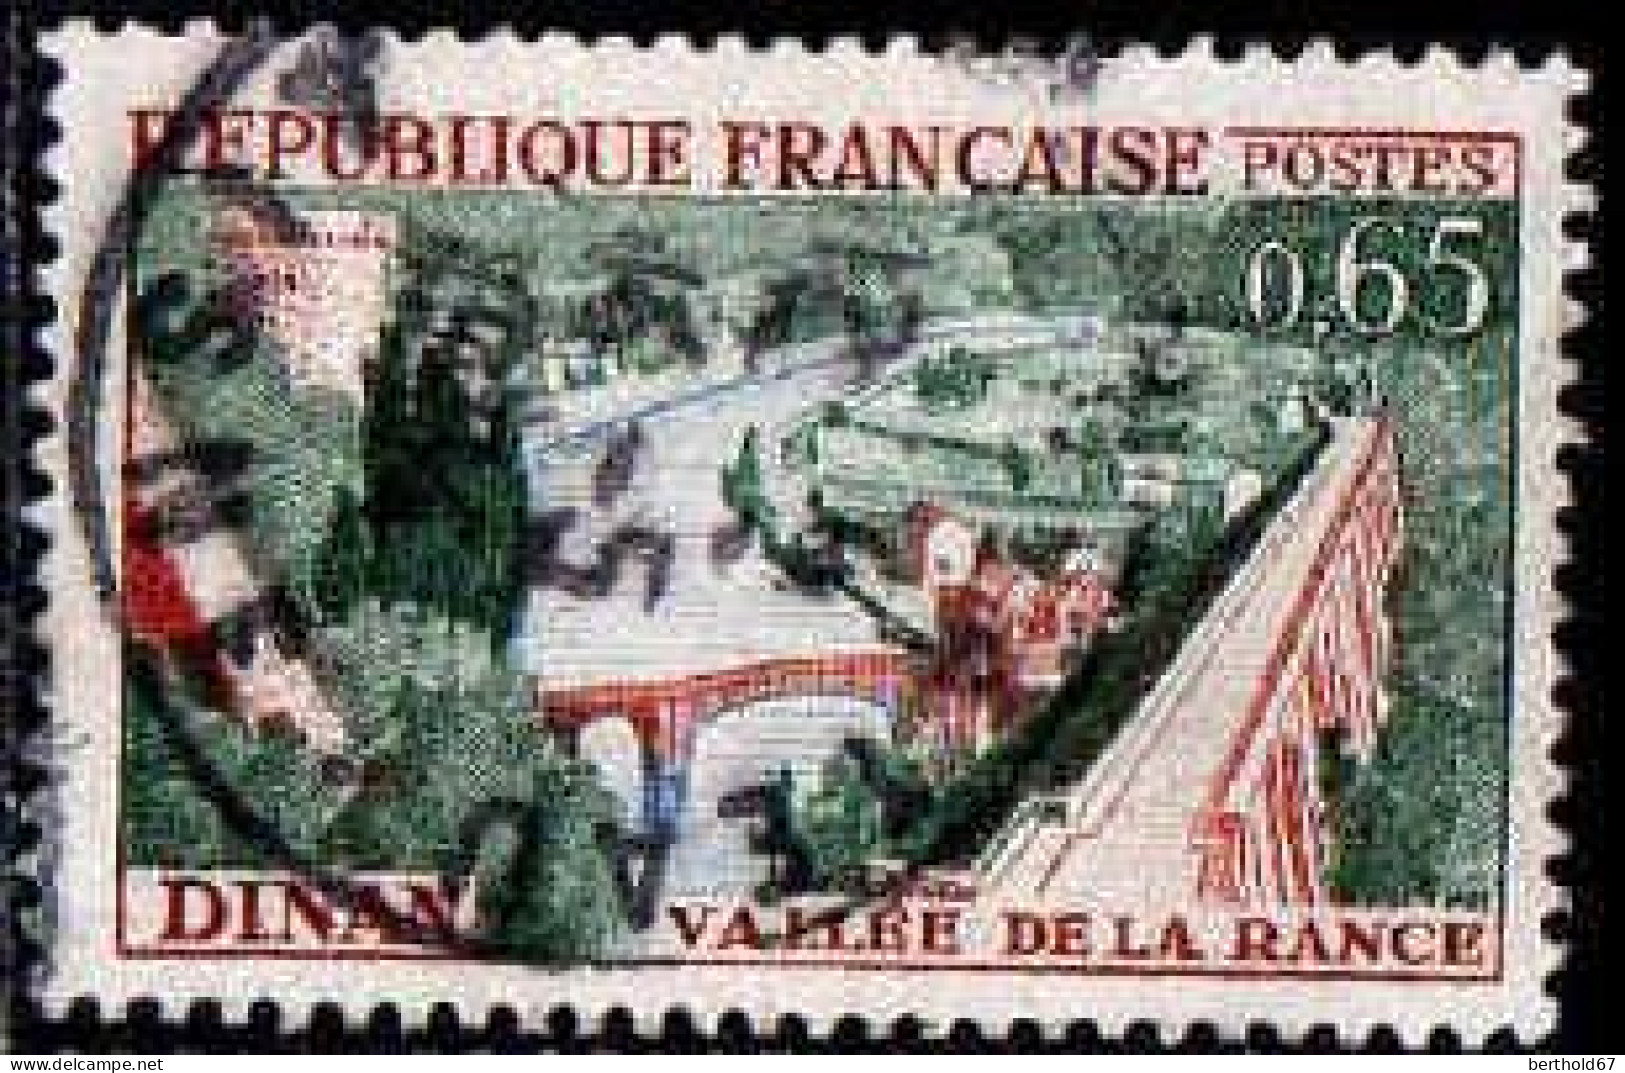 France Poste Obl Yv:1315 Mi:1369 Dinan Vallée De La Rance (cachet Rond) - Used Stamps